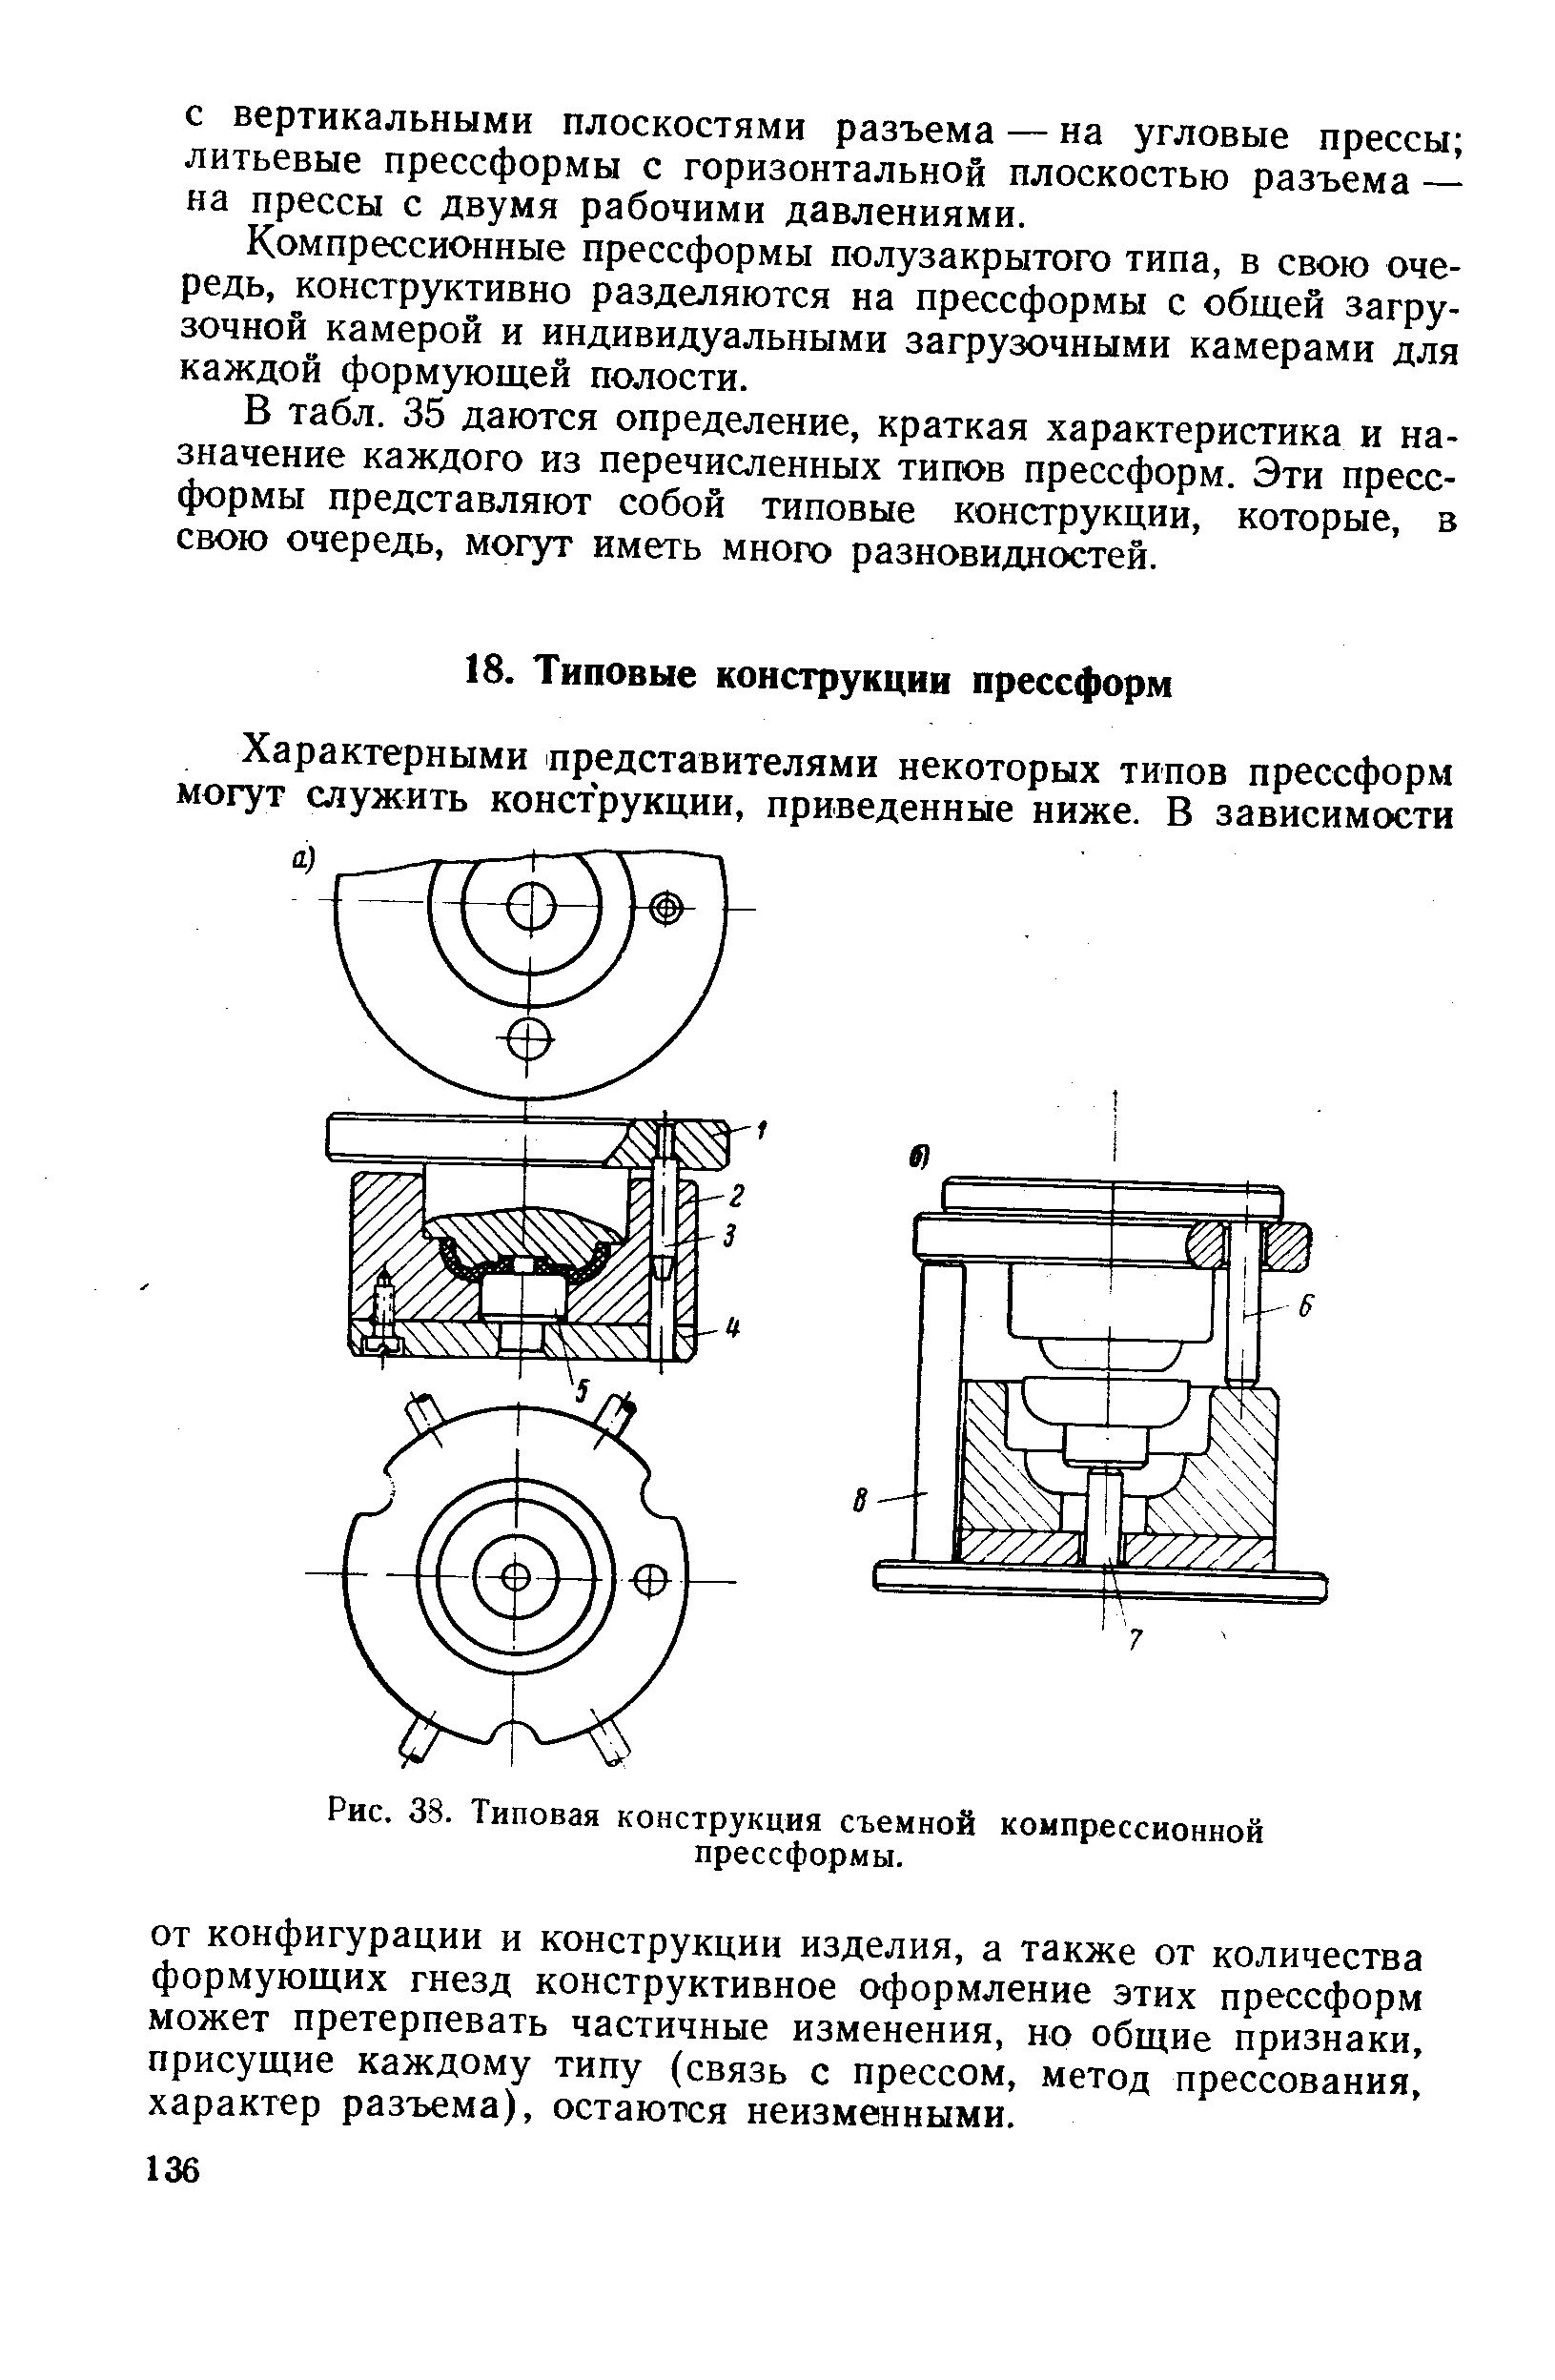 Рис. 38. Типовая конструкция съемной компрессионной прессформы.
